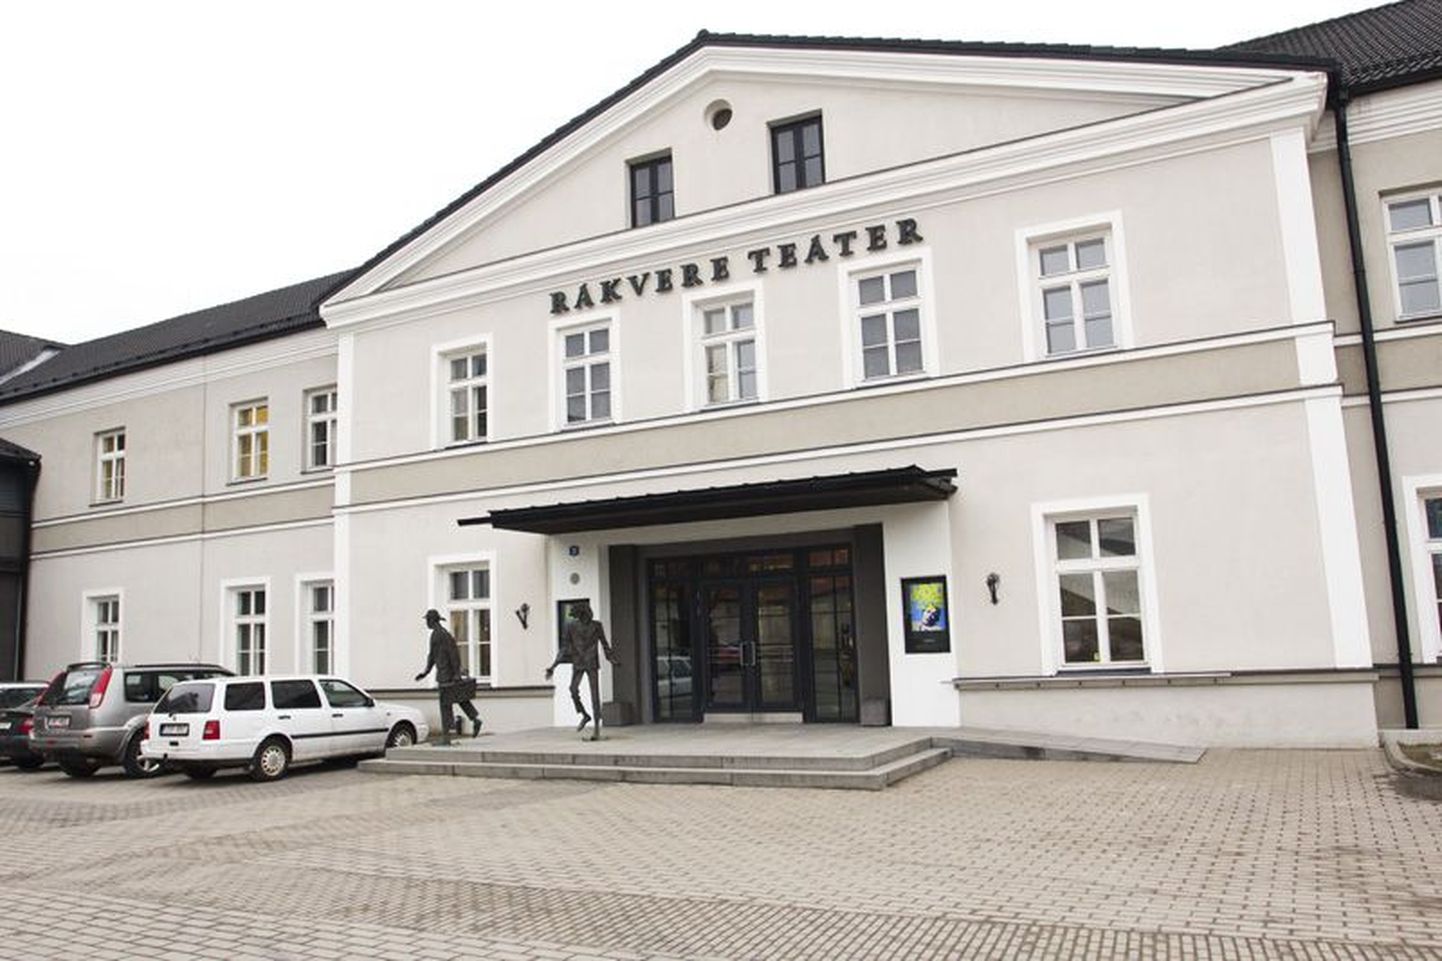 Rakvere Teater.